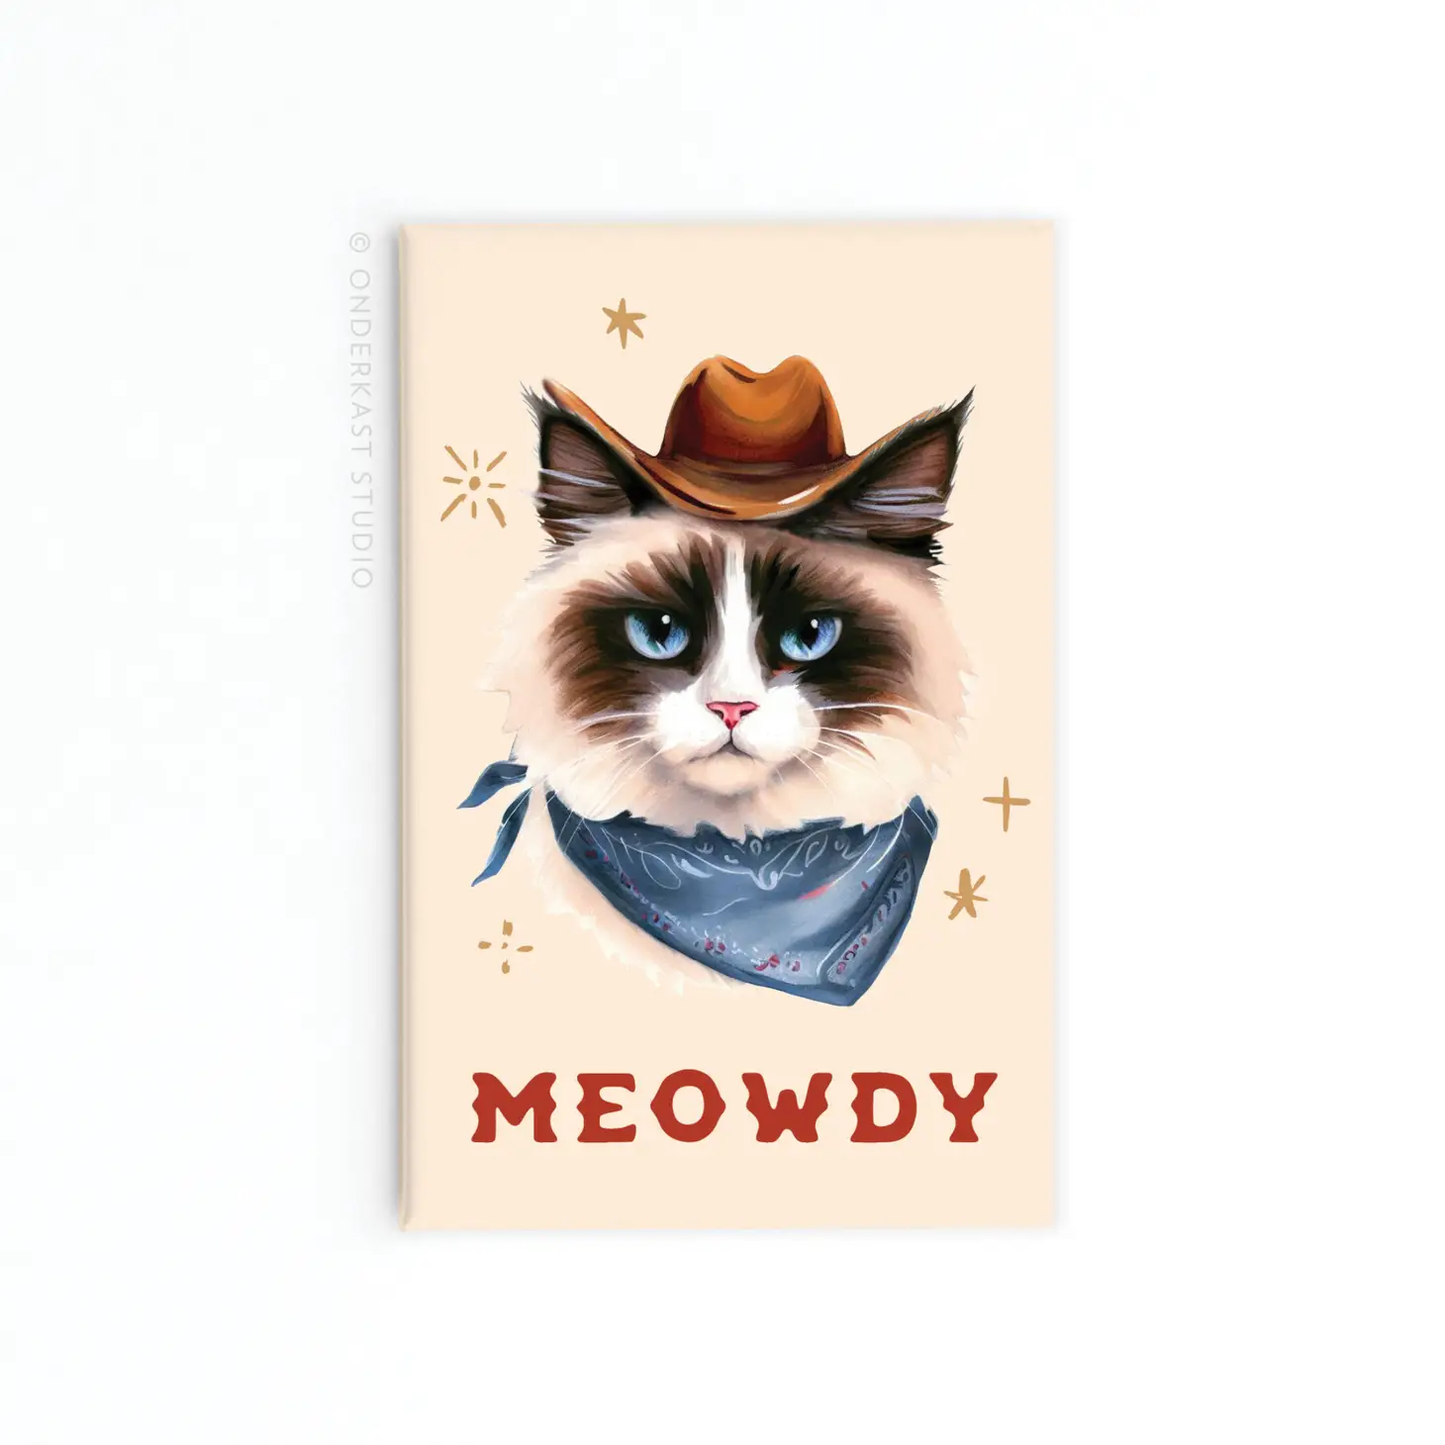 Meowdy Cowboy Magnet